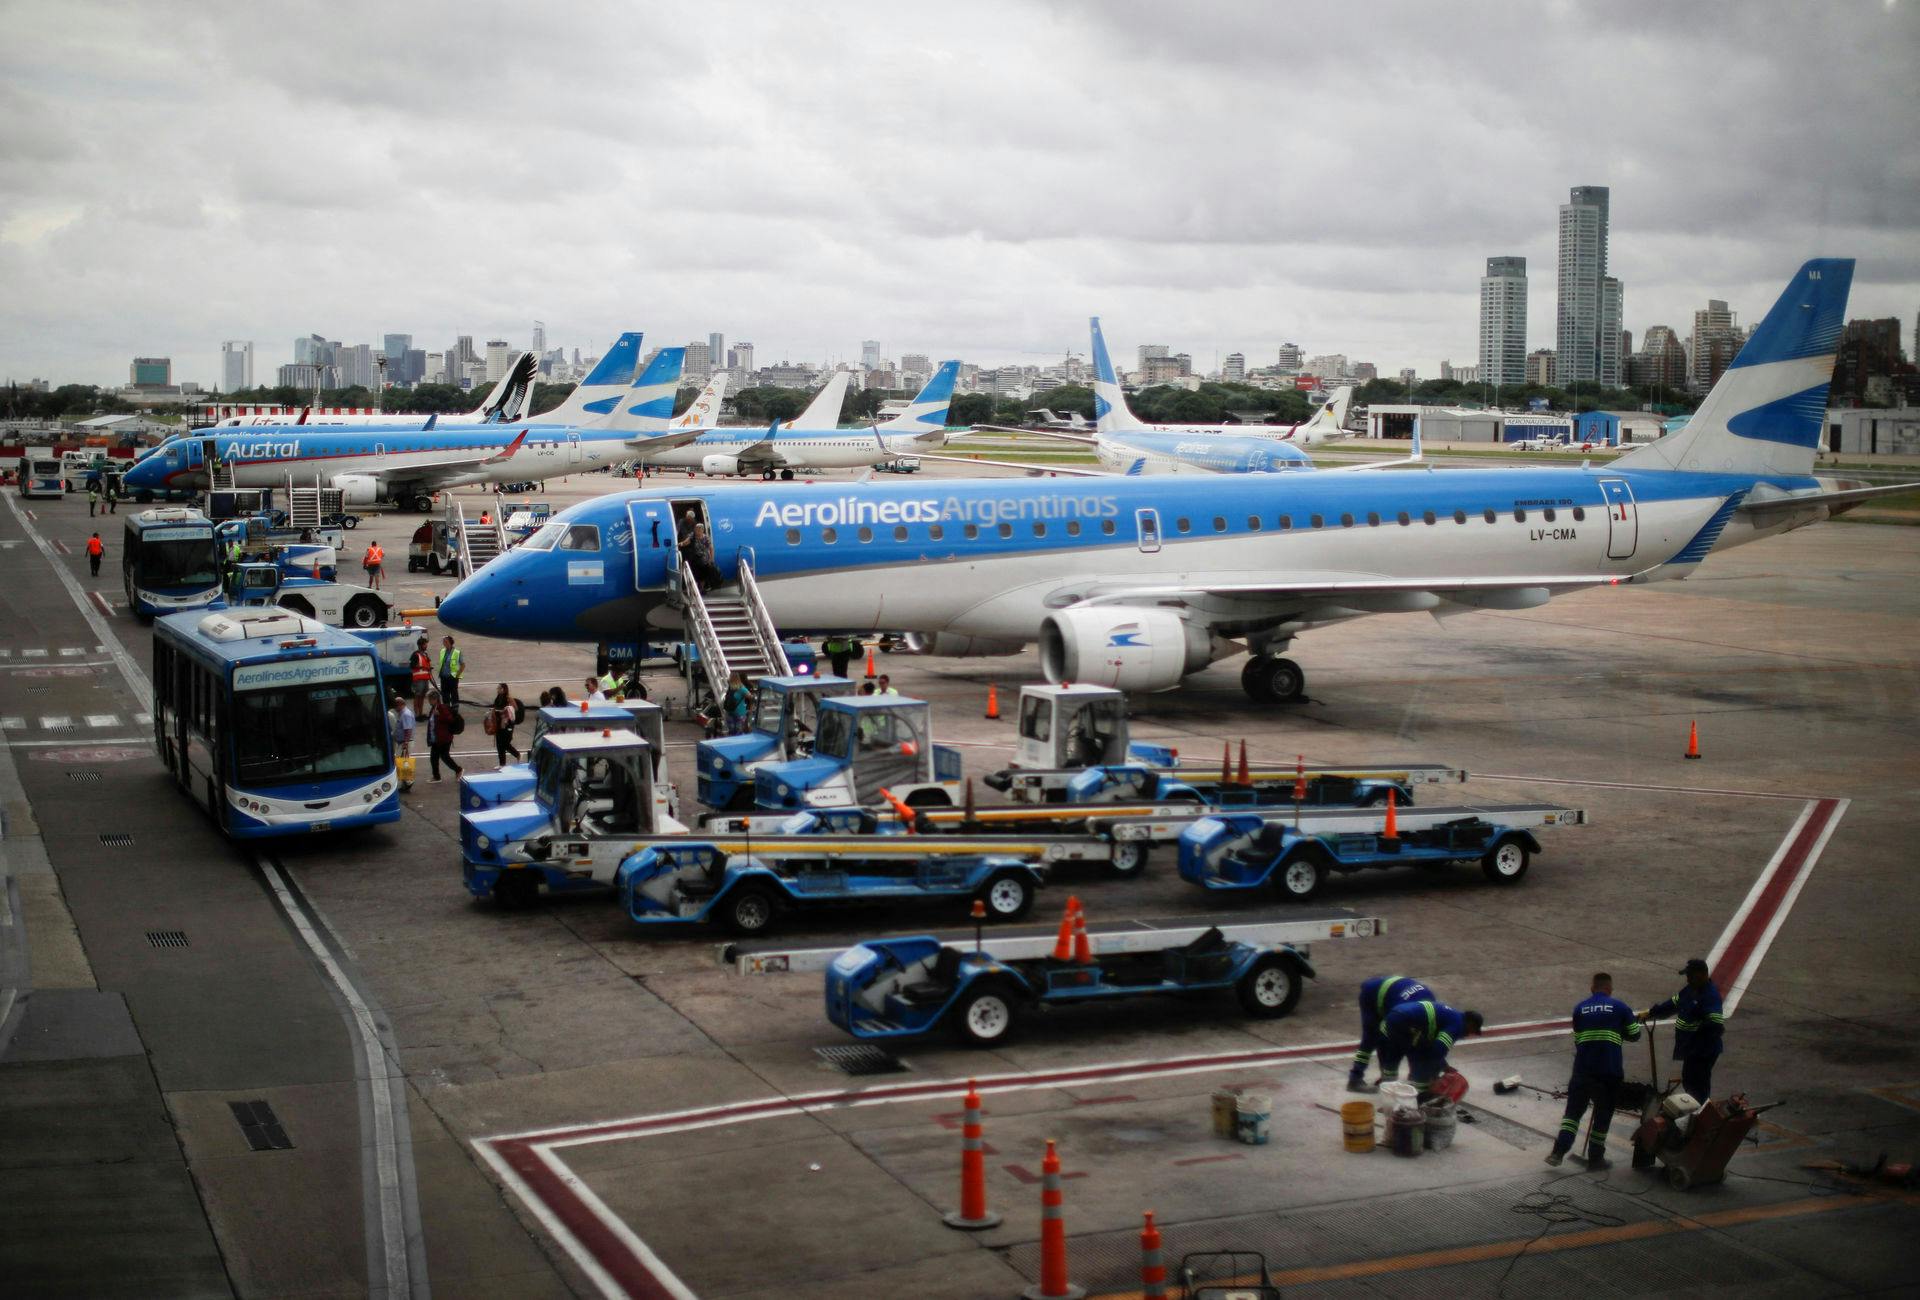 Lufthavnen Aeroparque Jorge Newbery i den argentinske hovedstad Buenos Aires, hvor myndighederne har indledt en efterforskning for at få fastslået, hvorvidt der står et kriminelt netværk bag en bølge af russisk "fødselsturisme" i det sydamerikanske 